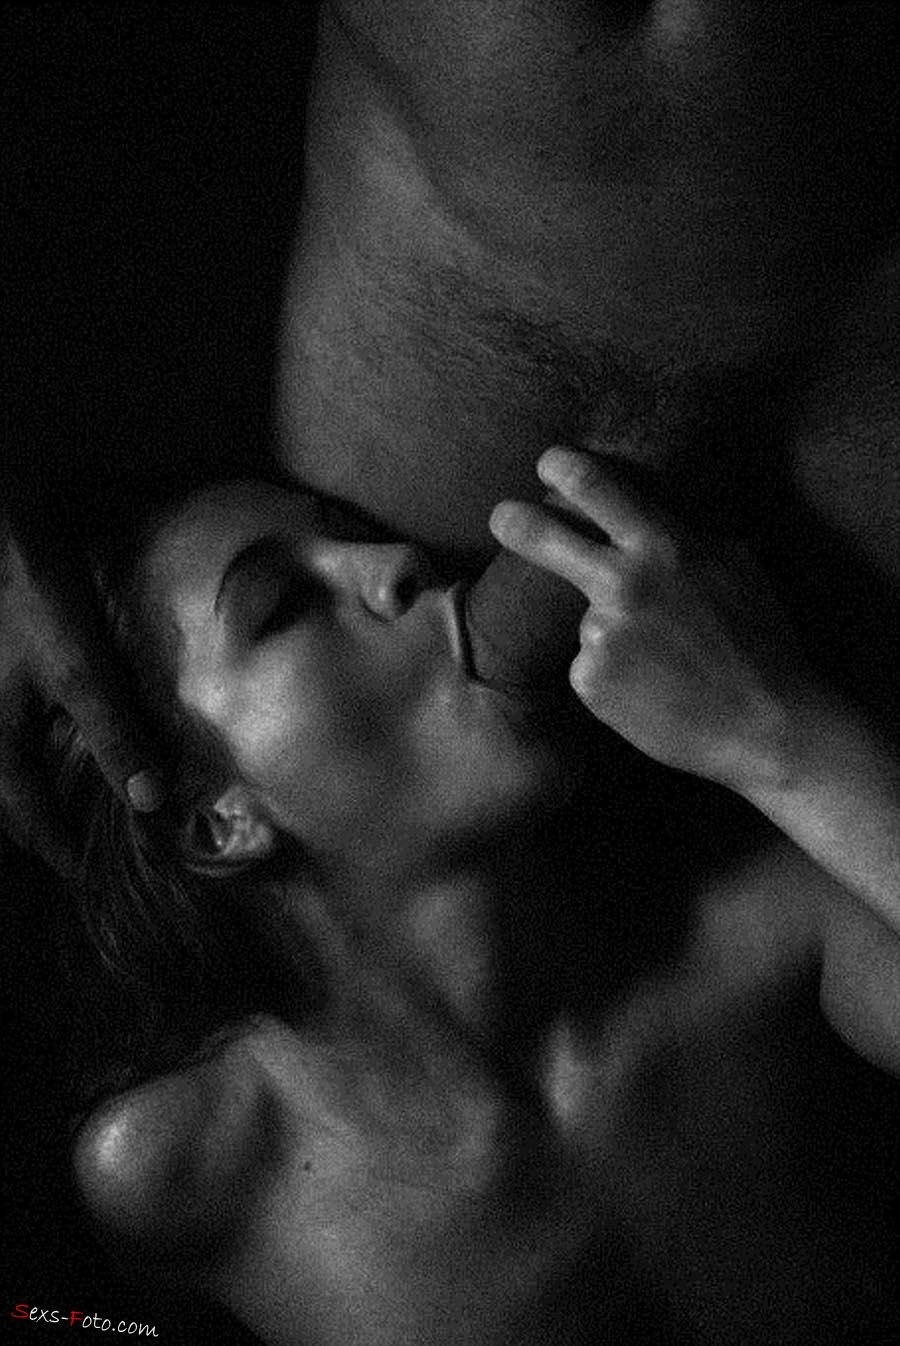 Black On White Fellatio - Black white erotic blowjob (25 photos) - porn photo